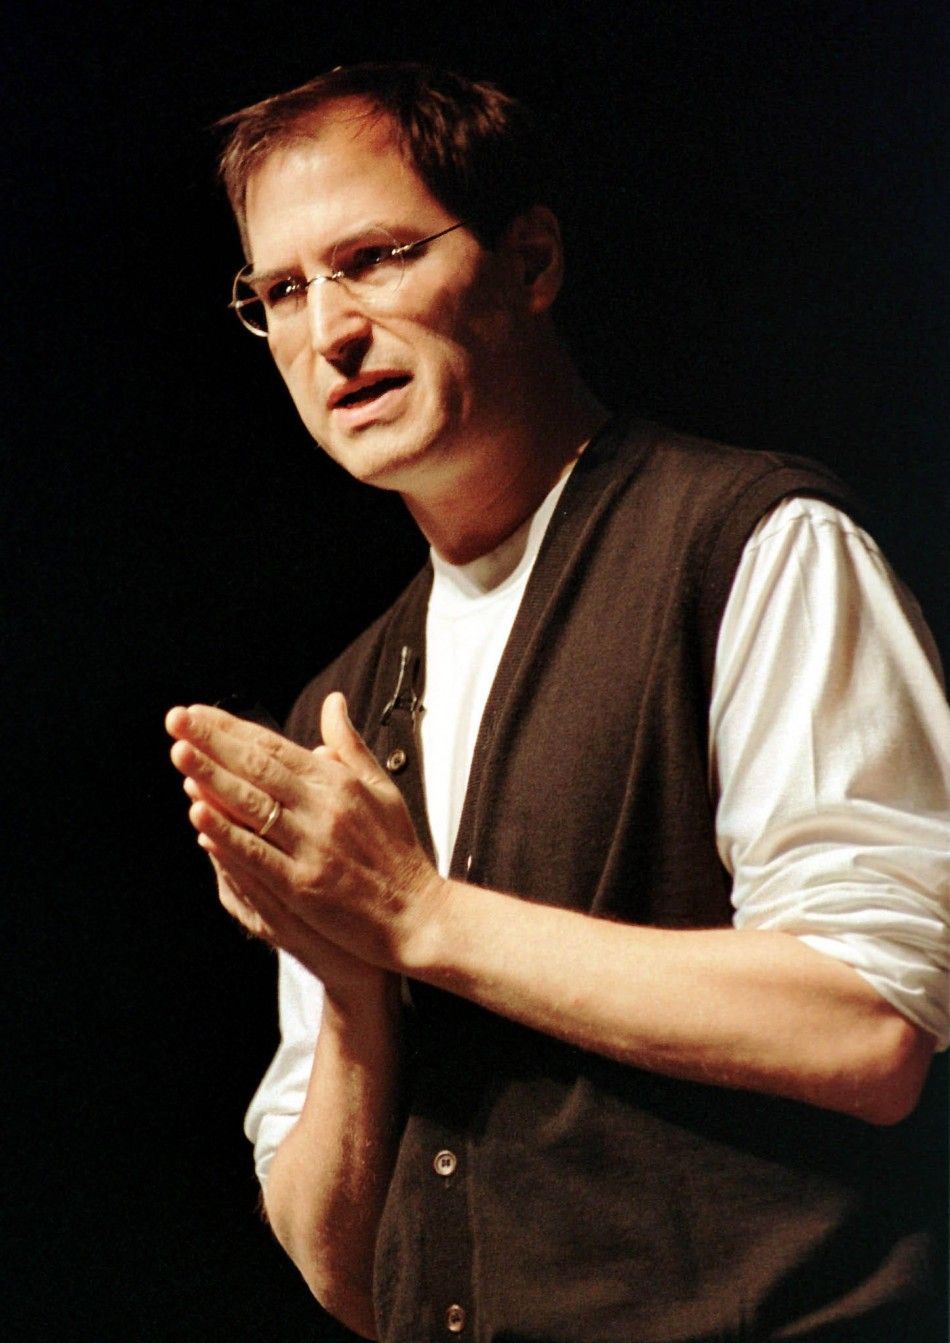 Steve Jobs Through the Years